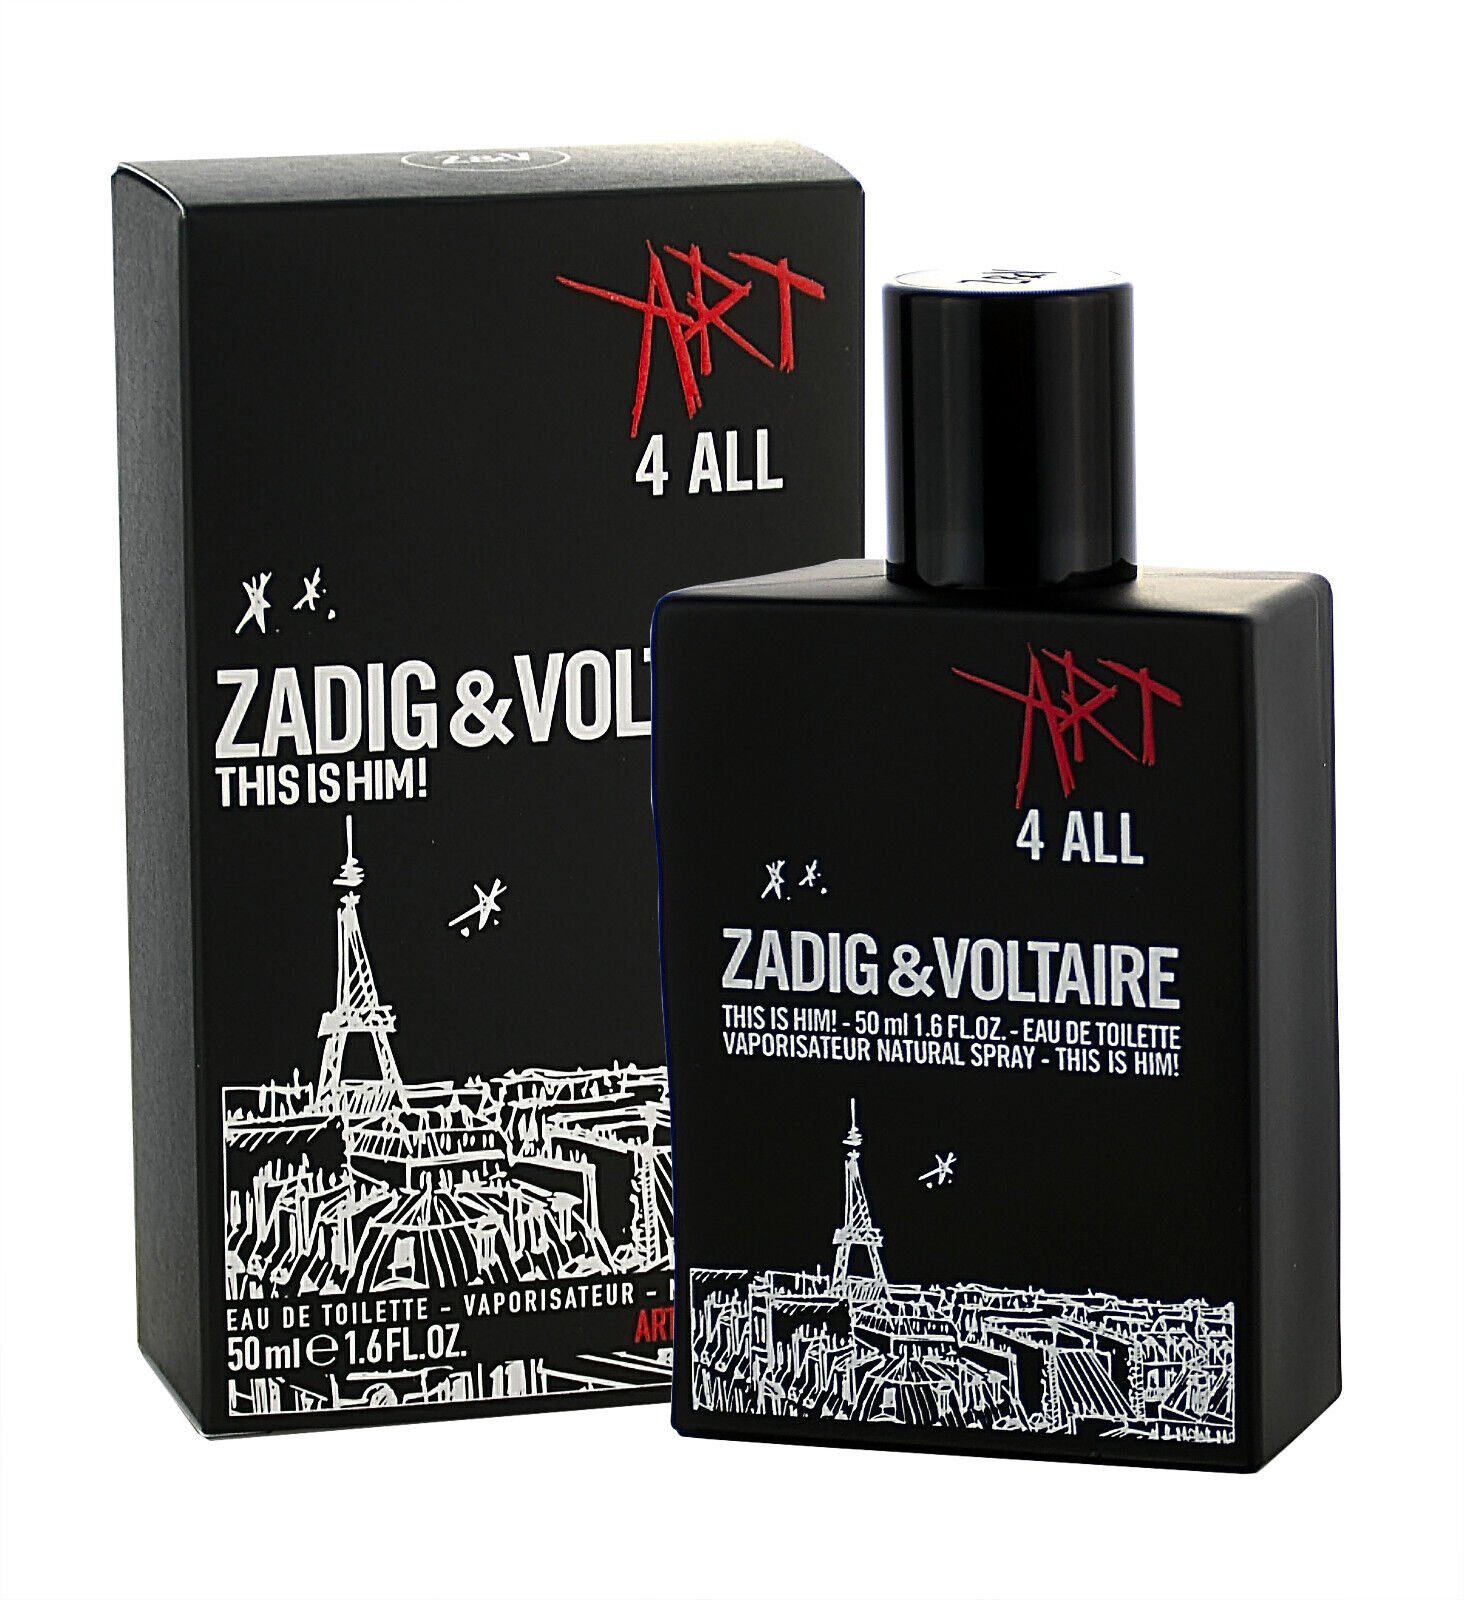 ZADIG & VOLTAIRE Eau de Toilette Zadig & Voltaire This is Him! Art 4 All Limited Edition EDT 50ml | Eau de Toilette